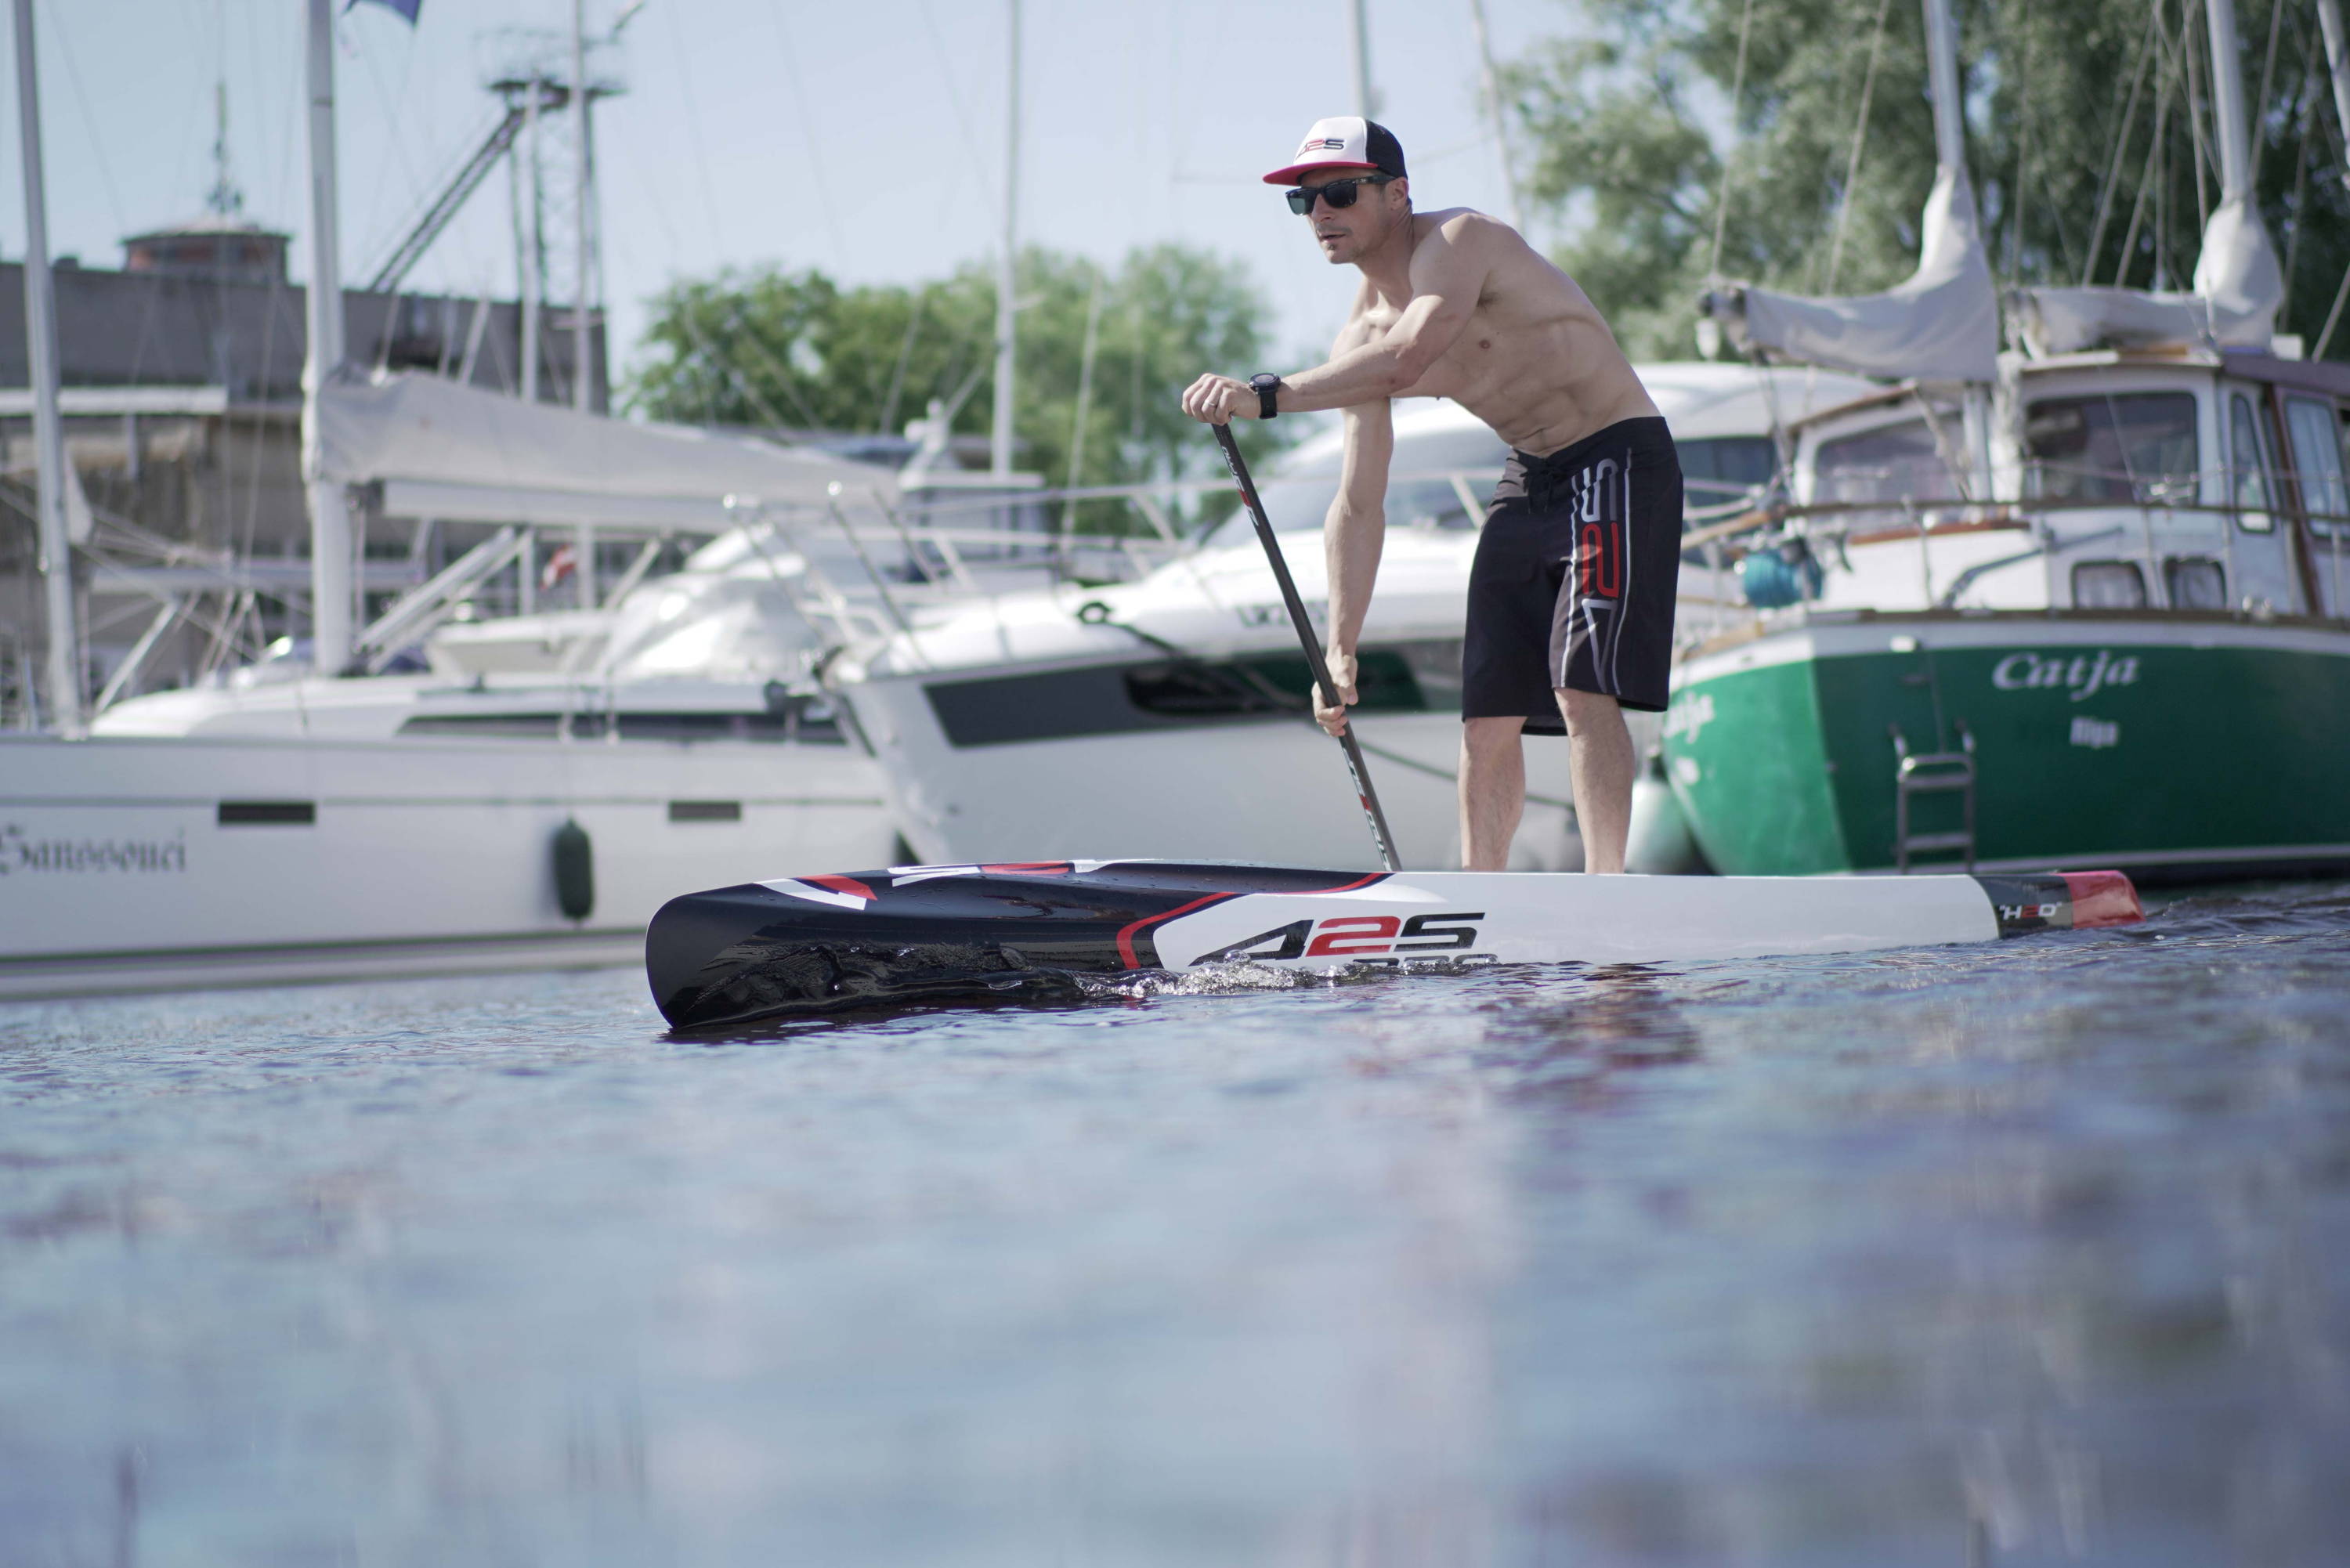 425pro board: paddling